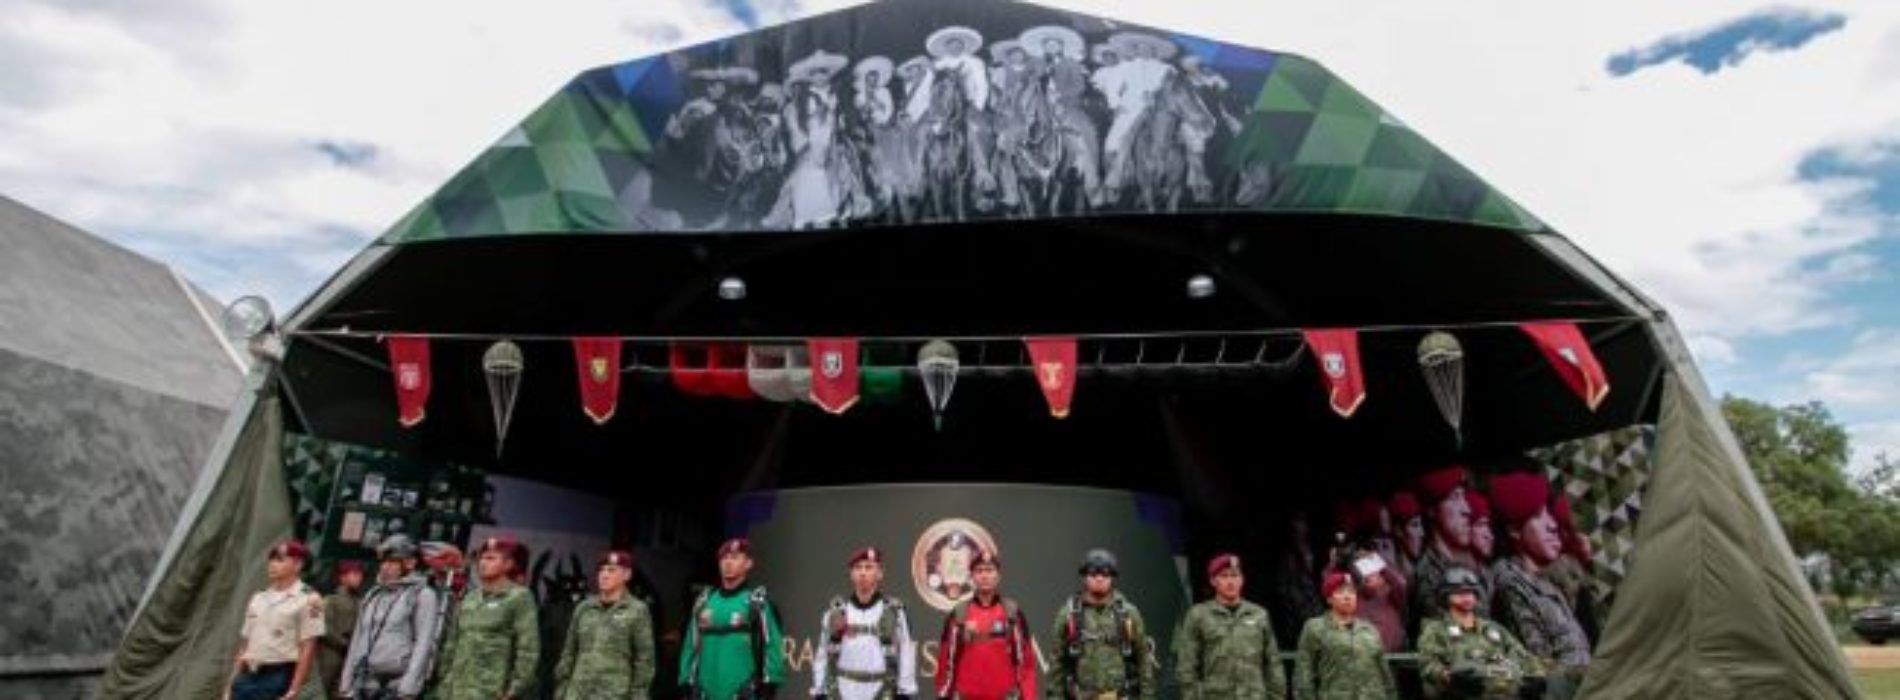 Todo listo para la Exposición Militar “Fuerzas
Armadas…Pasión por Servir a México”, en Oaxaca